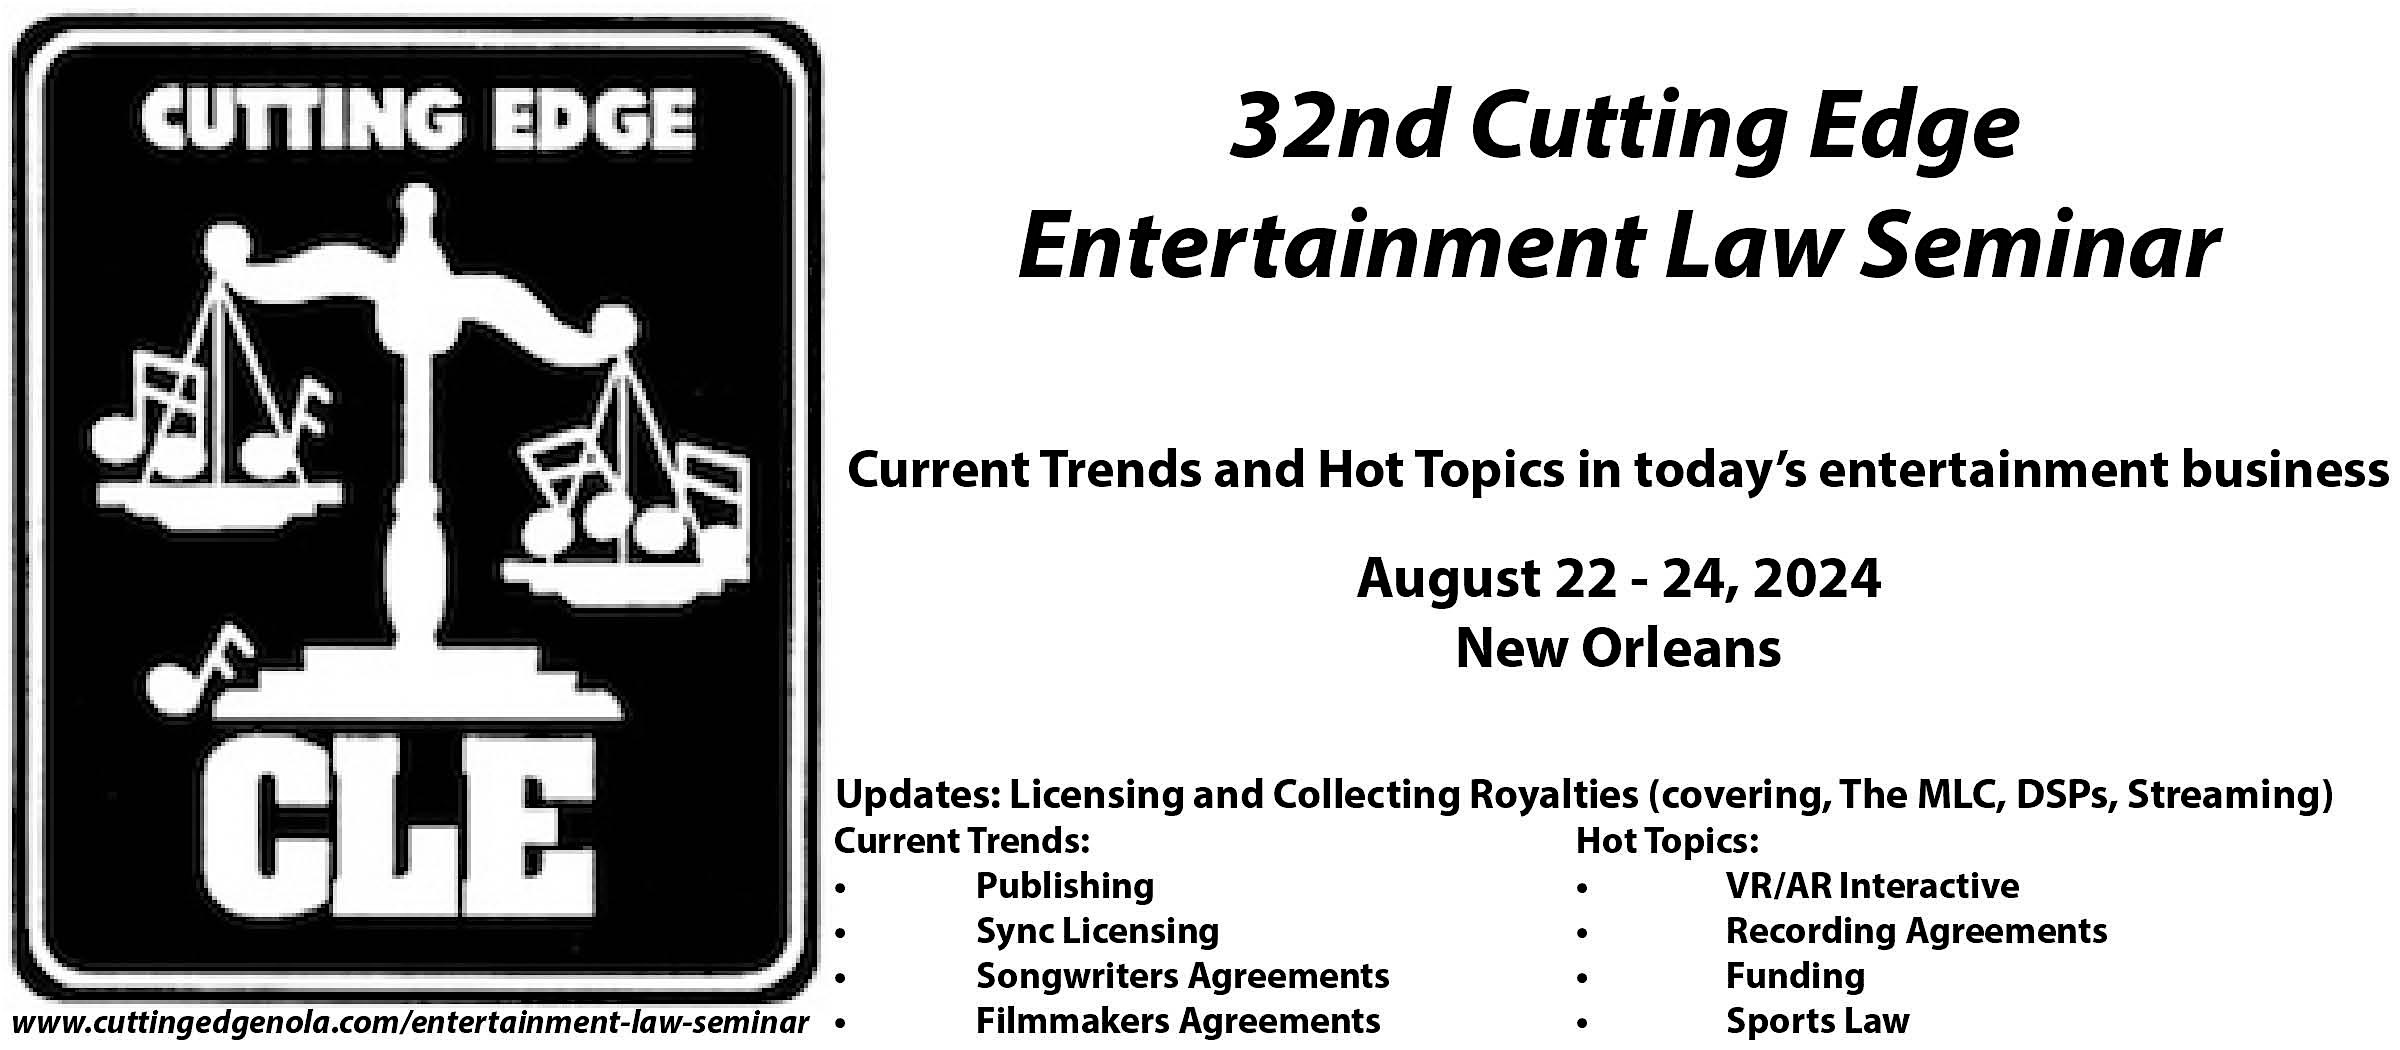 32nd Cutting Edge Entertainment Law Seminar - August 22 - 24, 2024